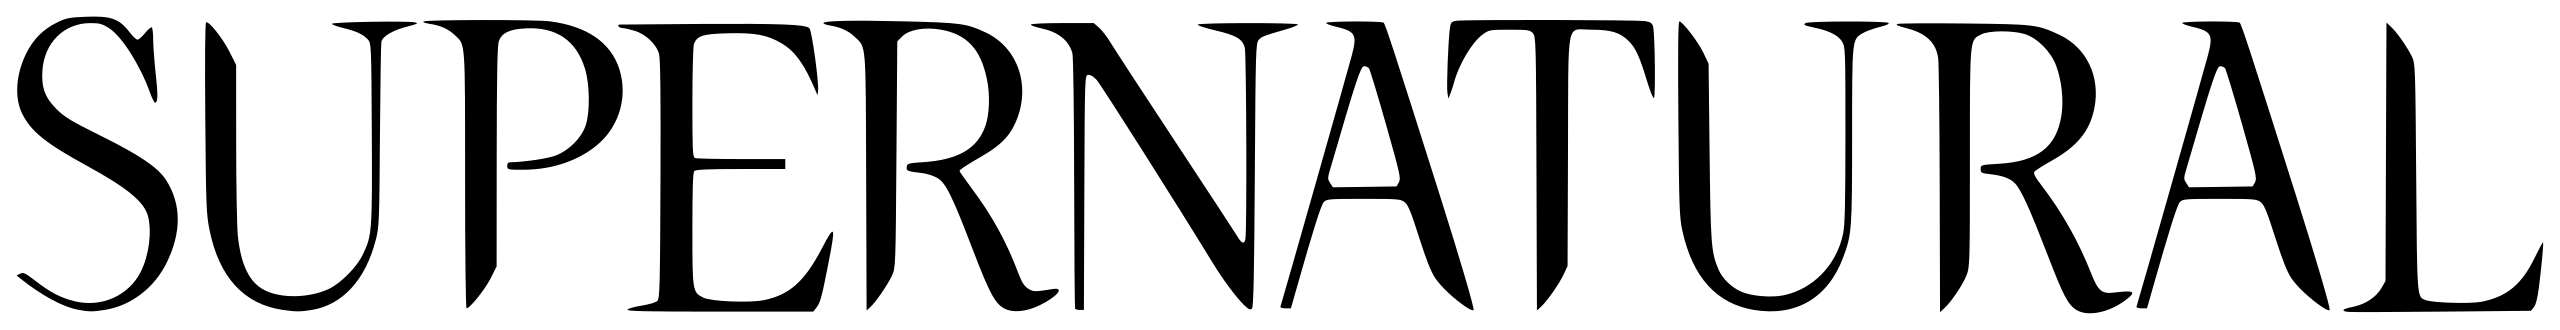 Сверхъестественное логотип PNG Изображения